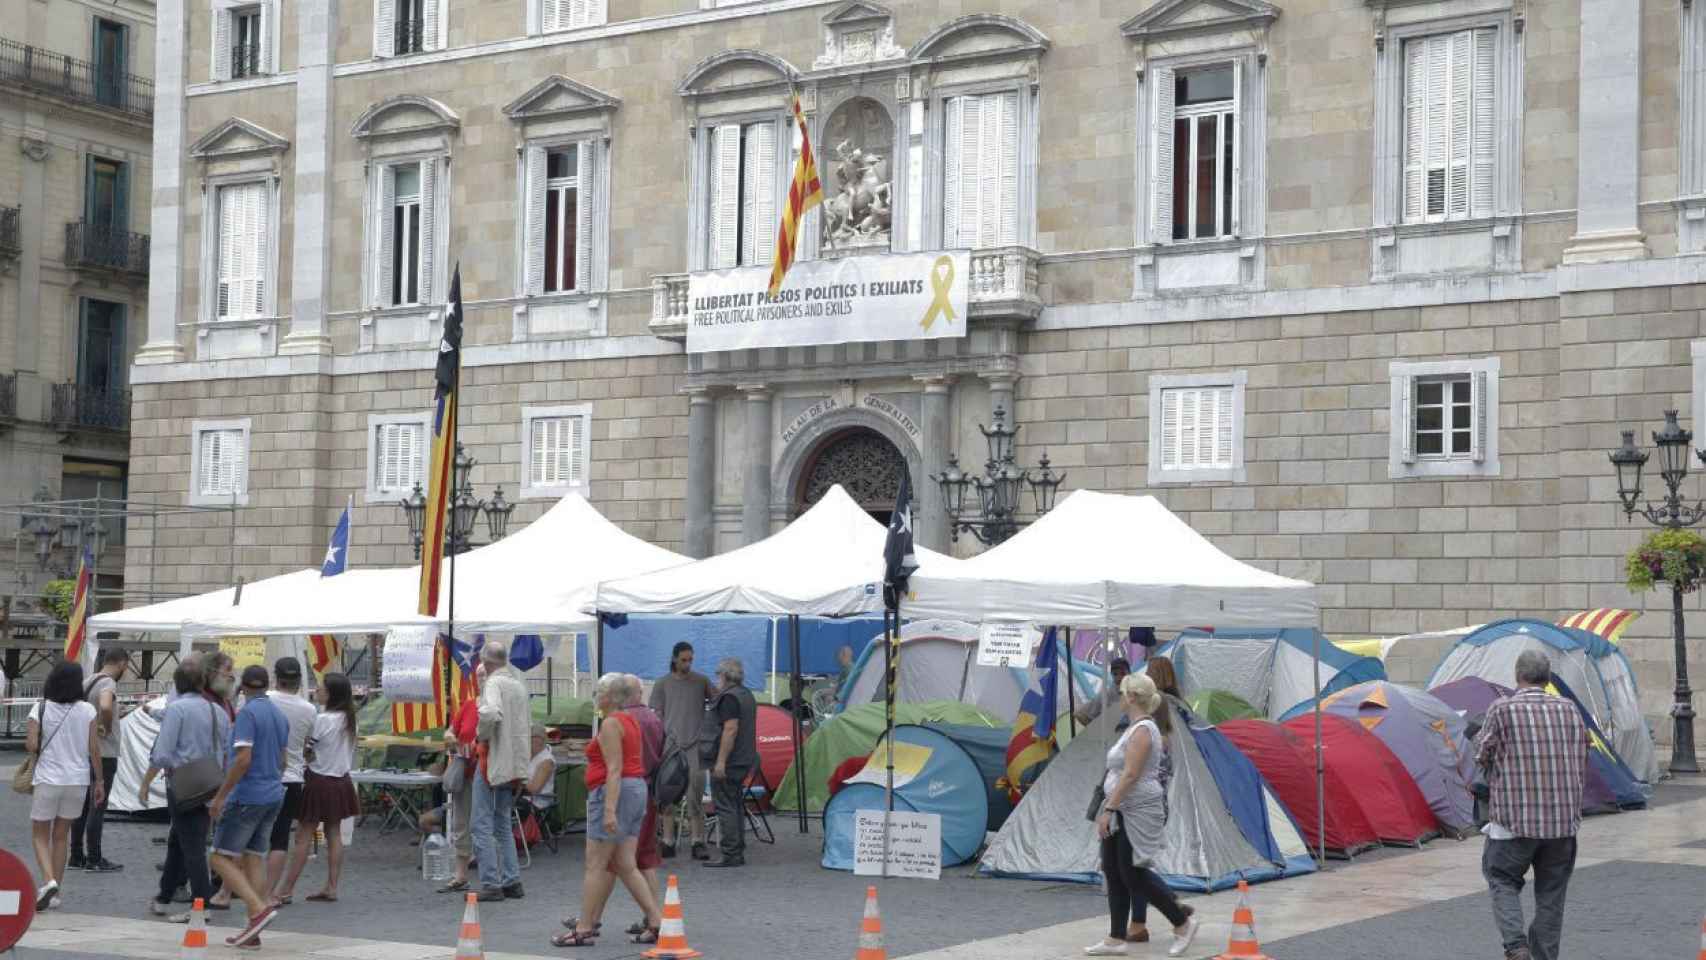 Imagen de la acampada en plena plaza Sant Jaume / JORDI ROMERO